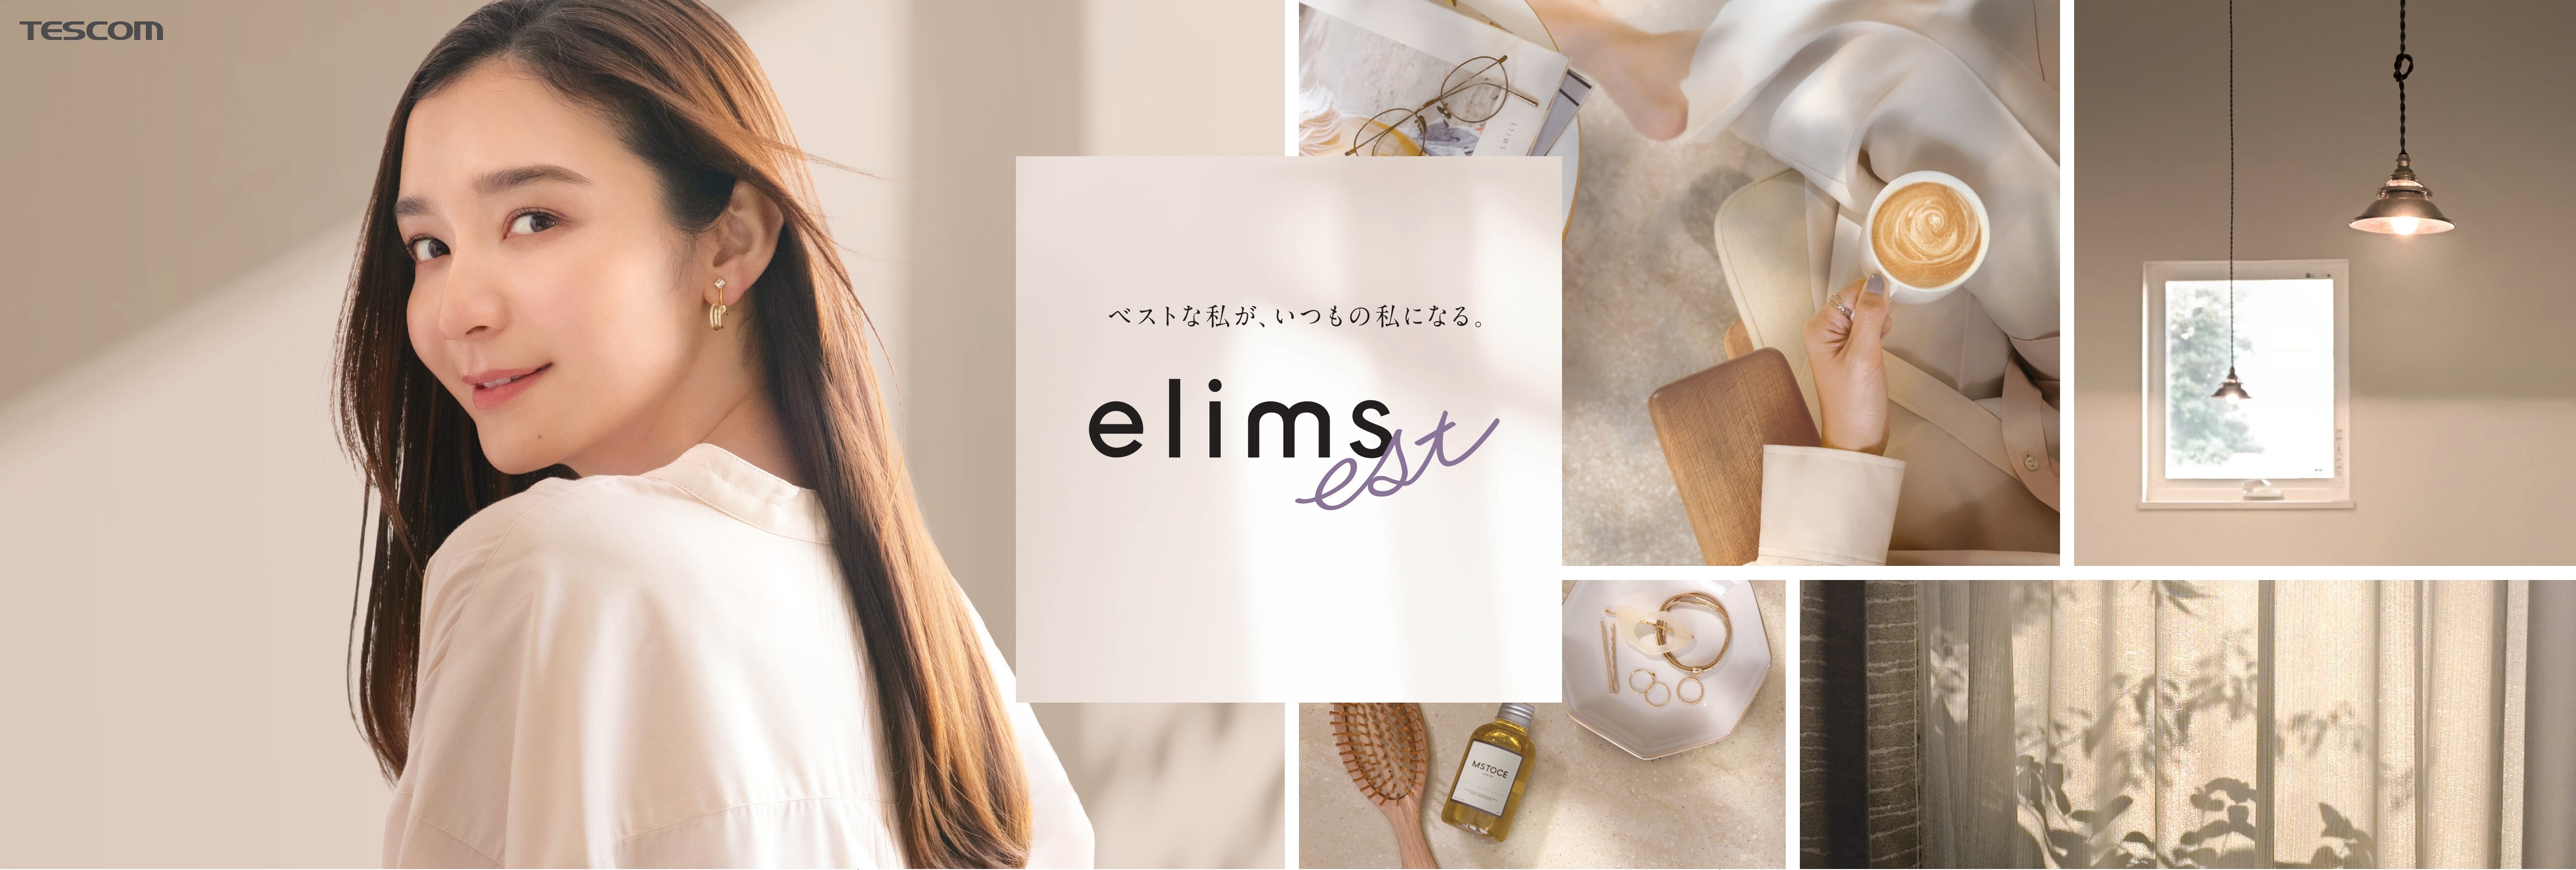 ベストな私が、いつもの私になる。おしゃれの楽しさを提供する美容家電のelimsシリーズから新ブランド「elims est (エリムスエスト)」が2022年9月上旬デビュー｜株式会社テスコムのプレスリリース